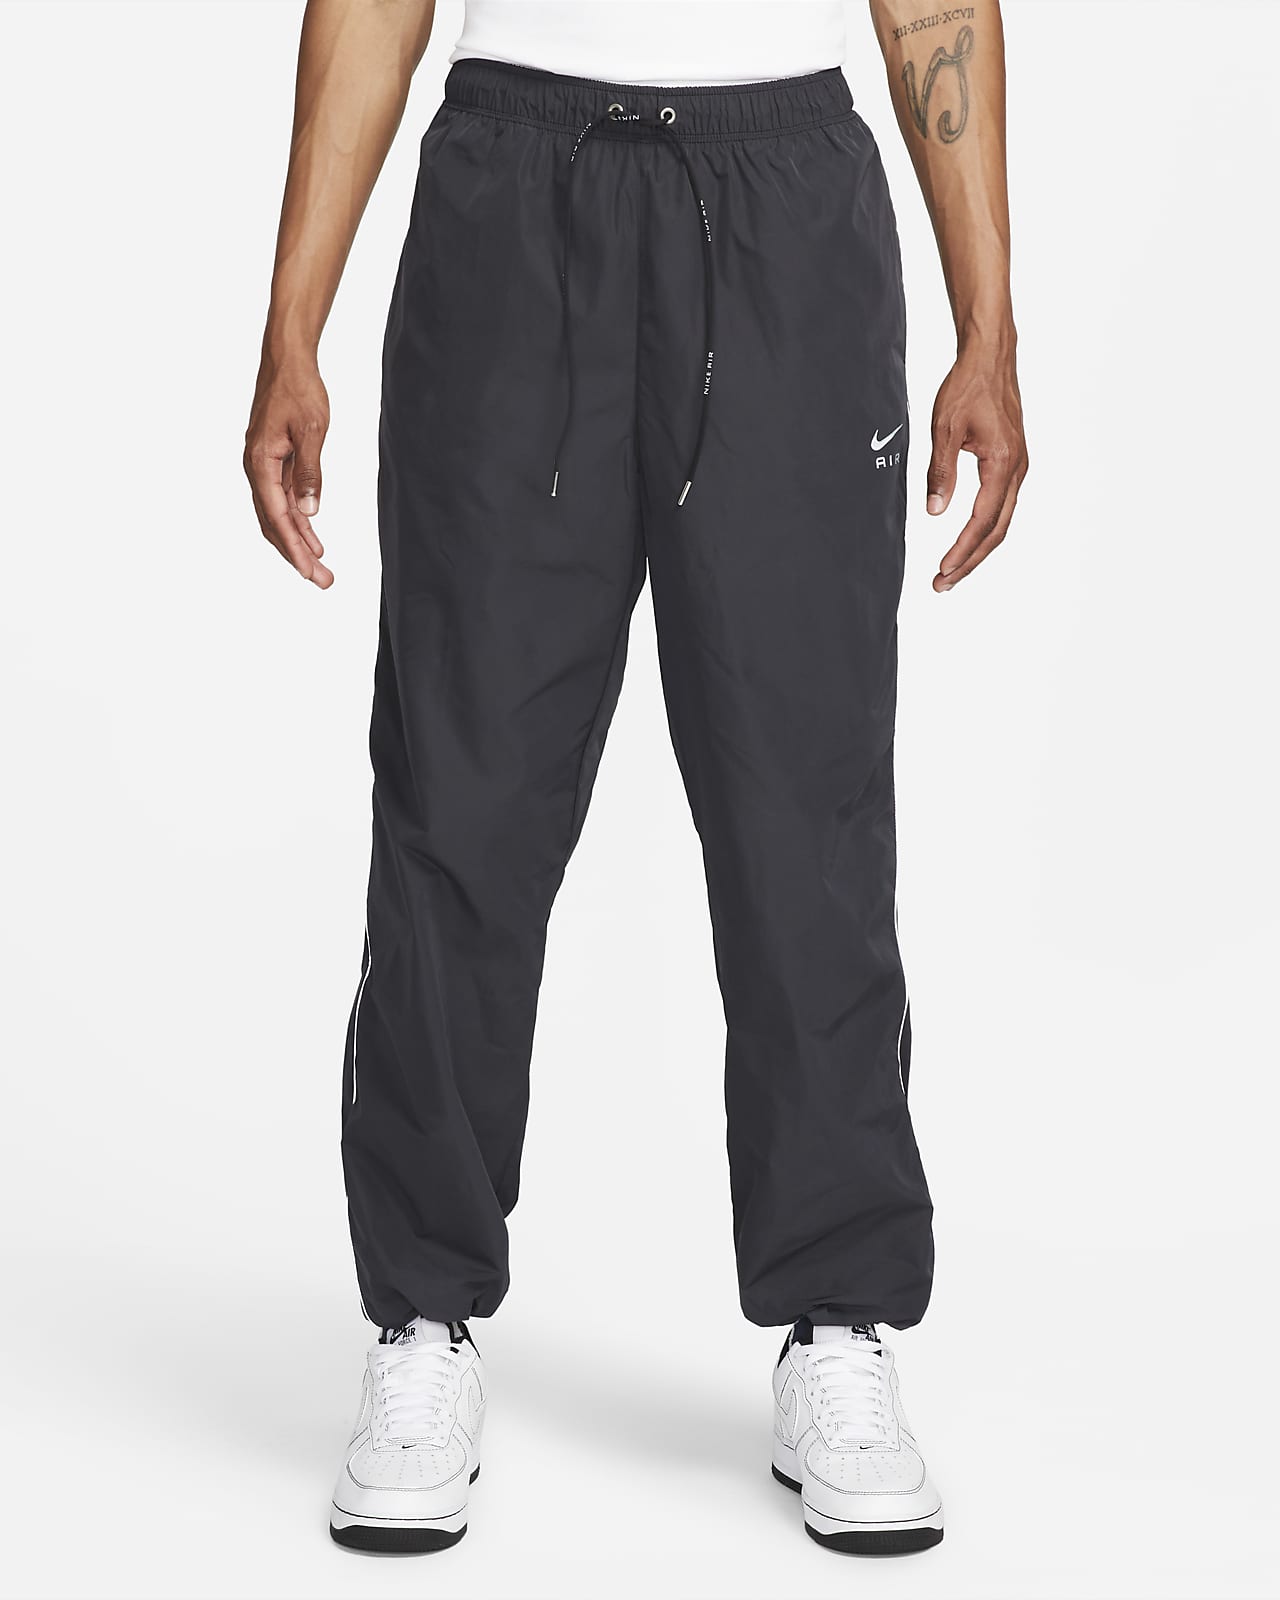 Nike Sportswear Air Men's Woven Trousers